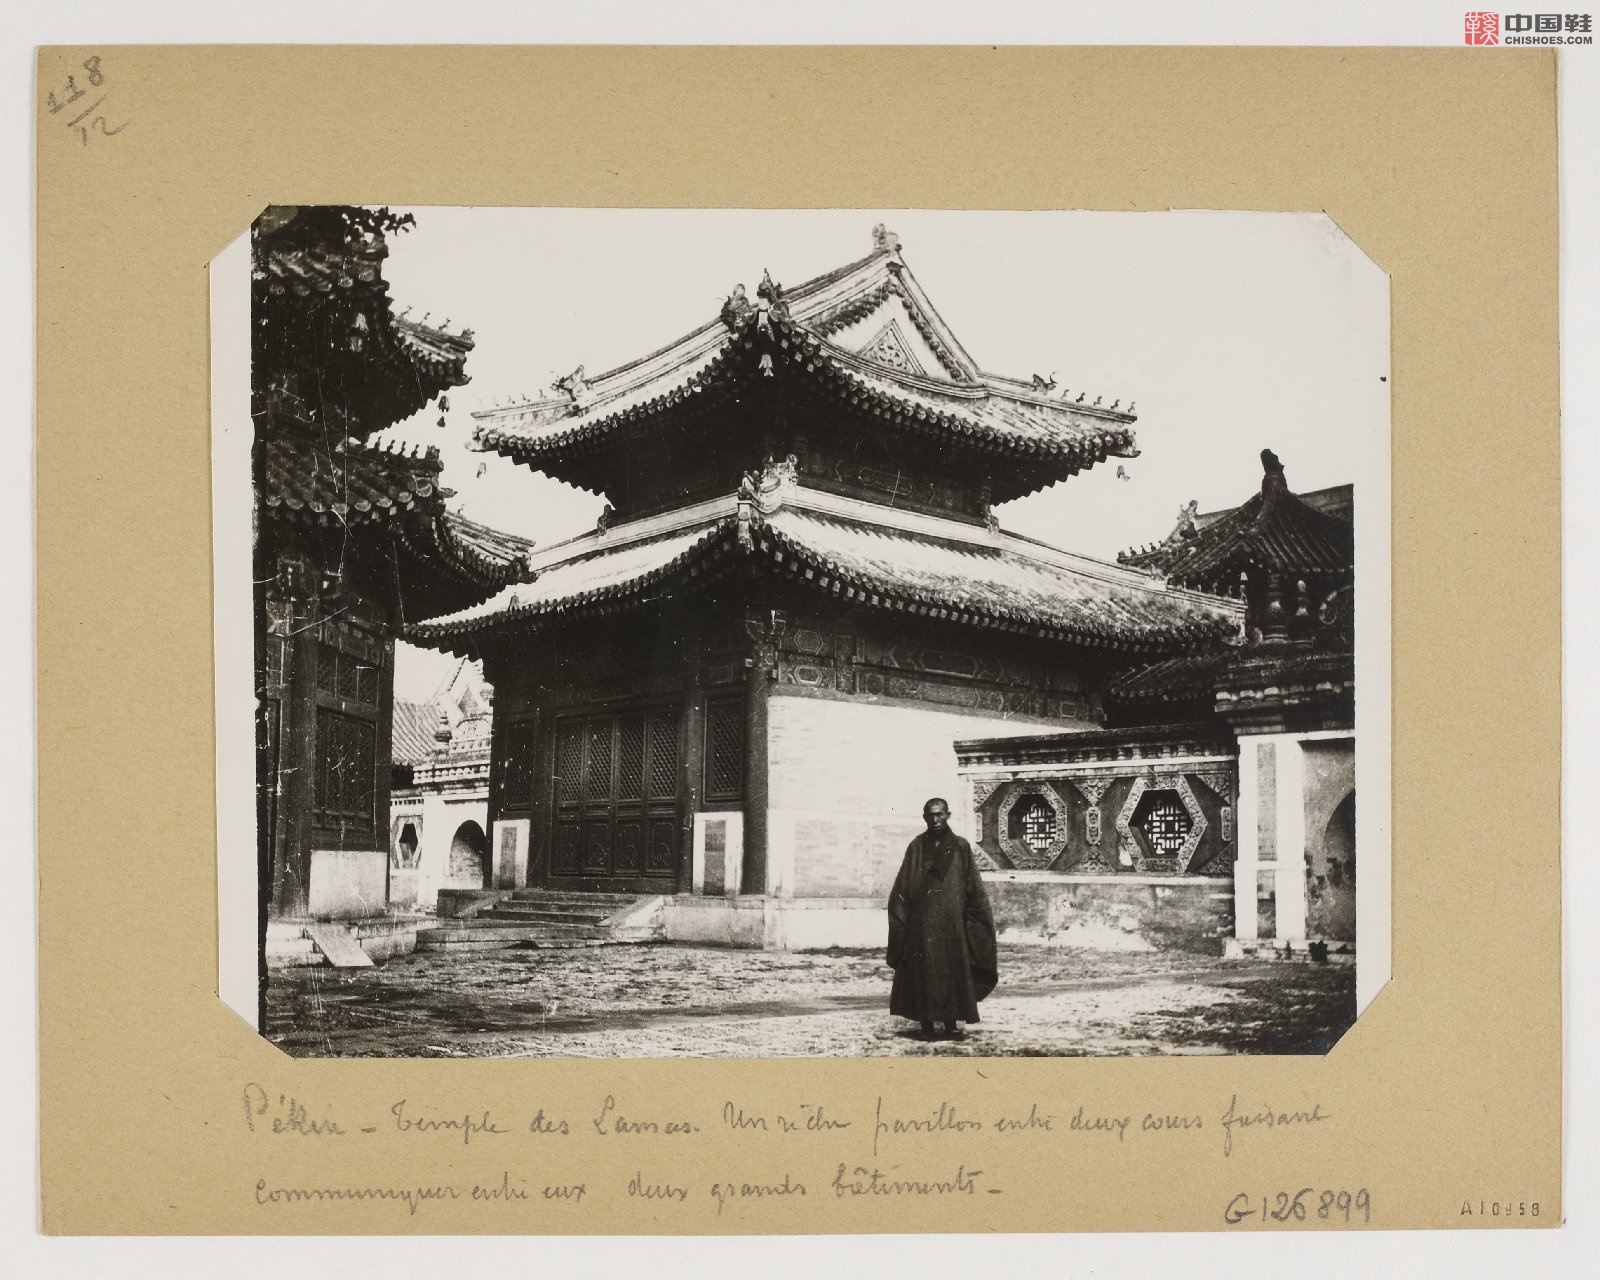 拉里贝的中国影像记录.415幅.By Firmin Laribe.1900-1910年_Page_333.jpg